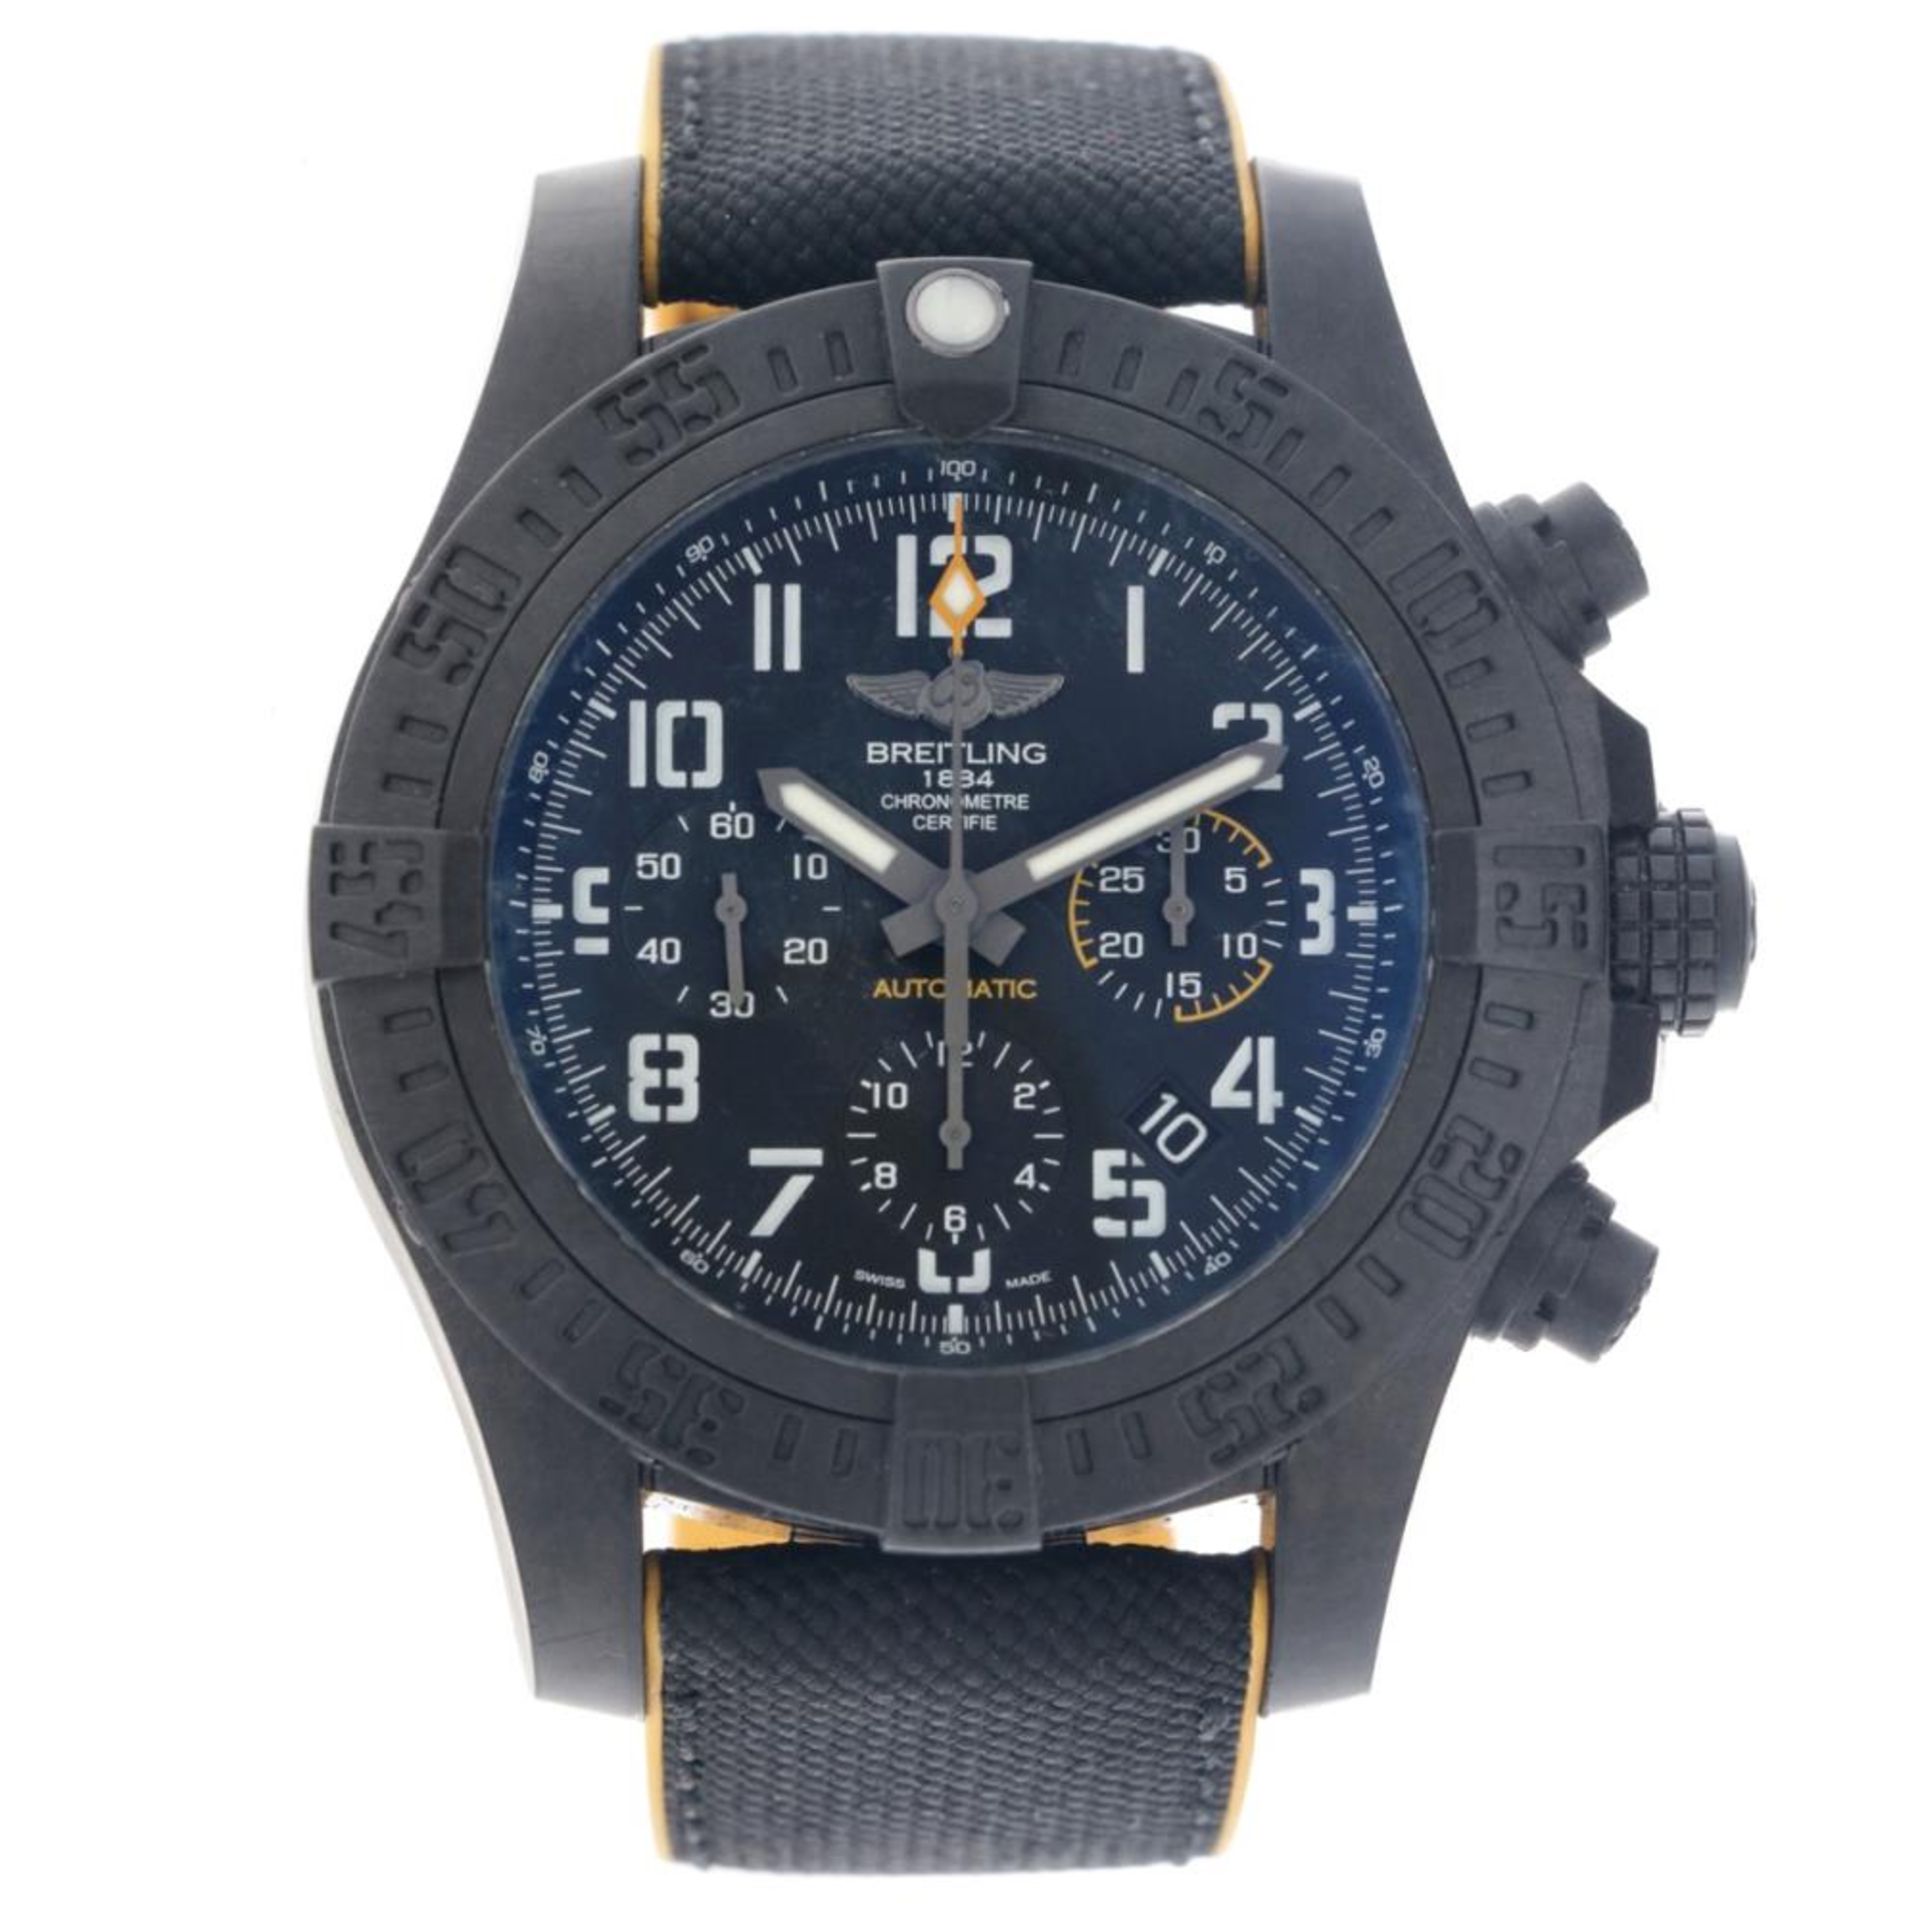 Breitling Avenger Hurricane XB0180E4 - Men's watch - 2019. - Image 2 of 12